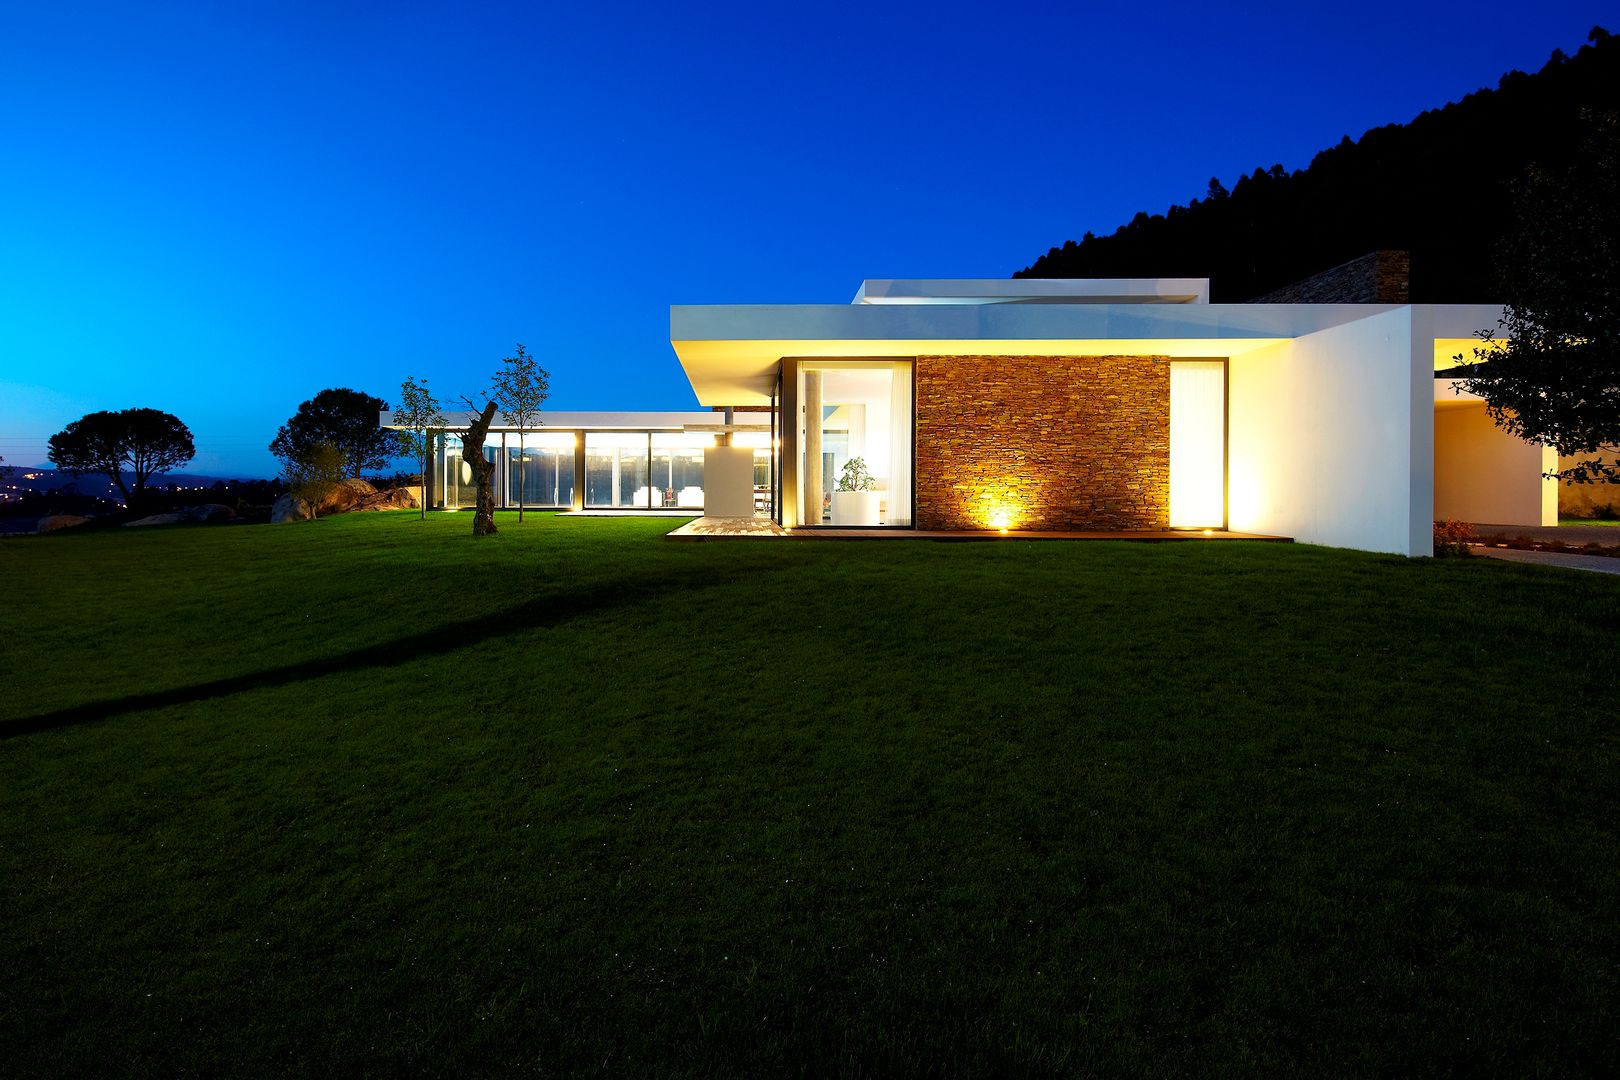 Casa moderna de dimensões generosas e piscina interior, Risco Singular - Arquitectura Lda Risco Singular - Arquitectura Lda Rumah Minimalis